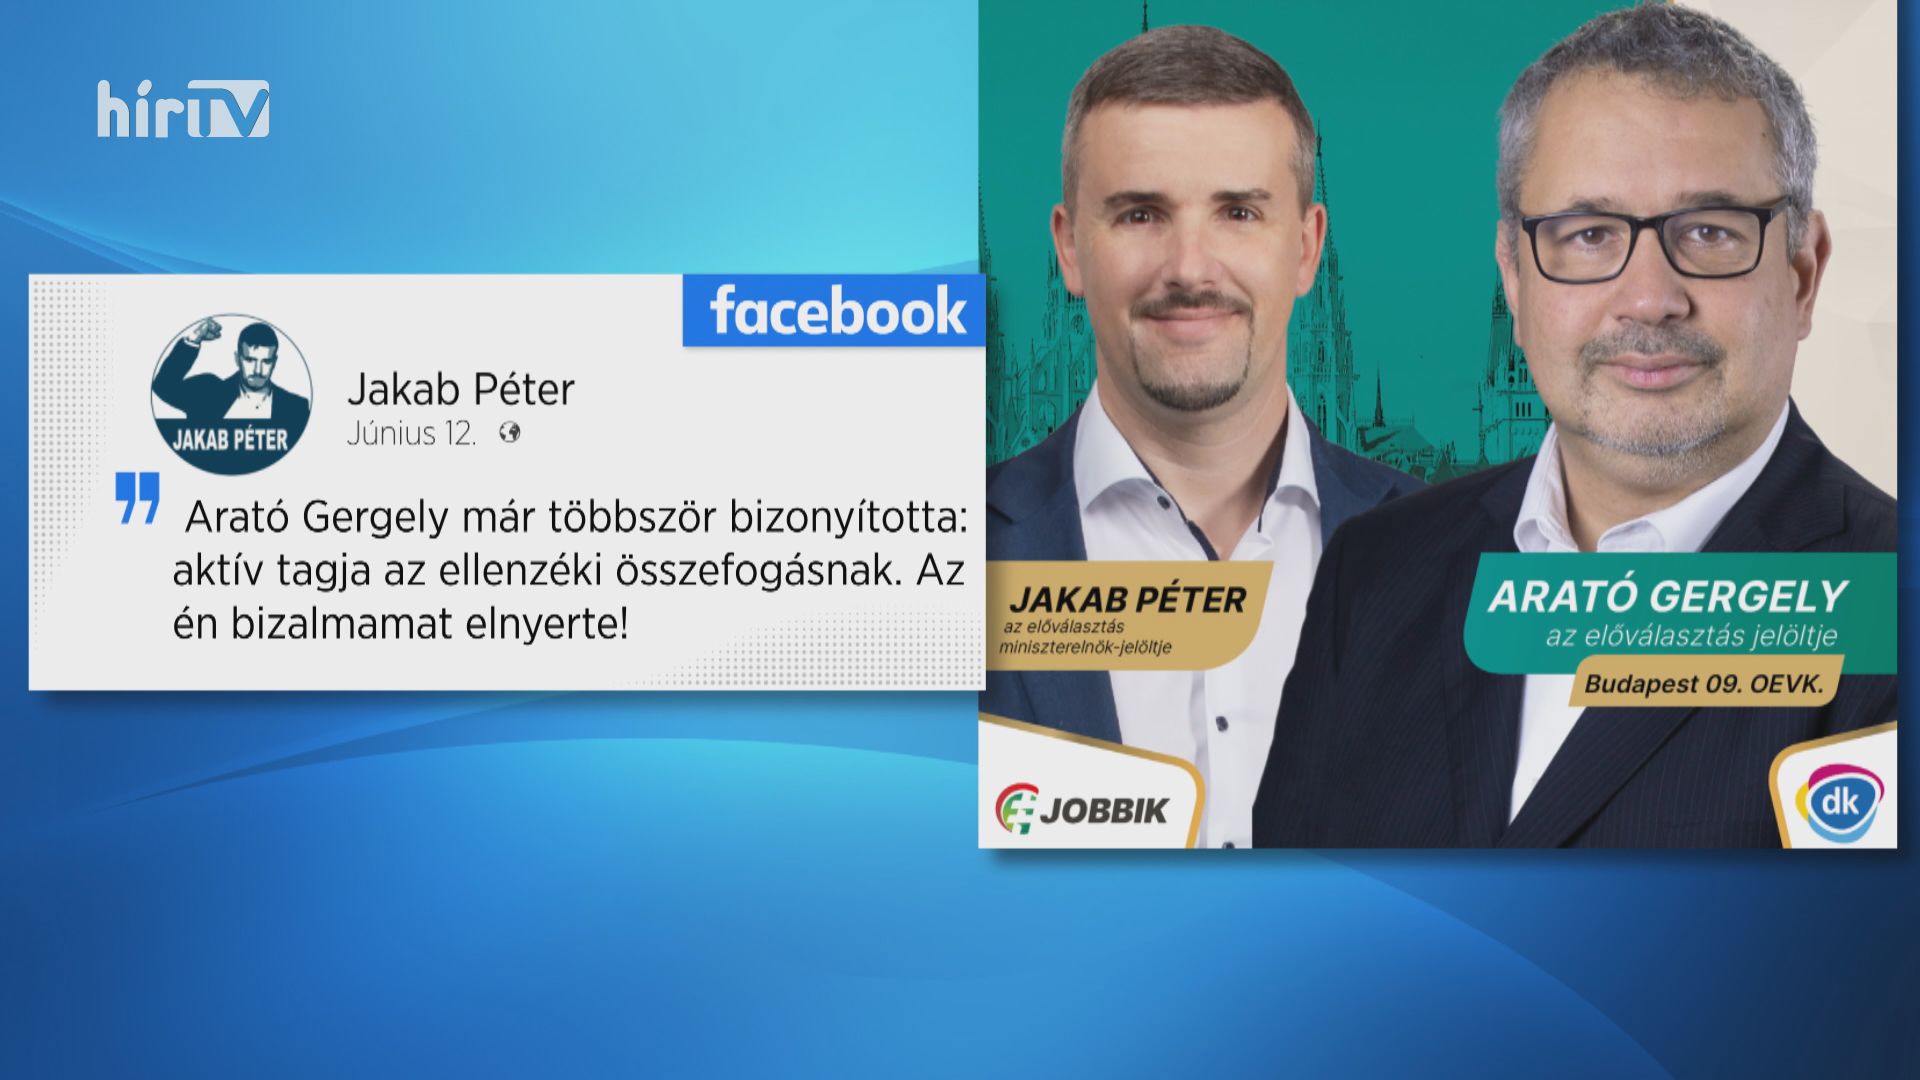 Korábban vállalhatatlannak találta Arató Gergely a Jobbikot, most támogatják egymást